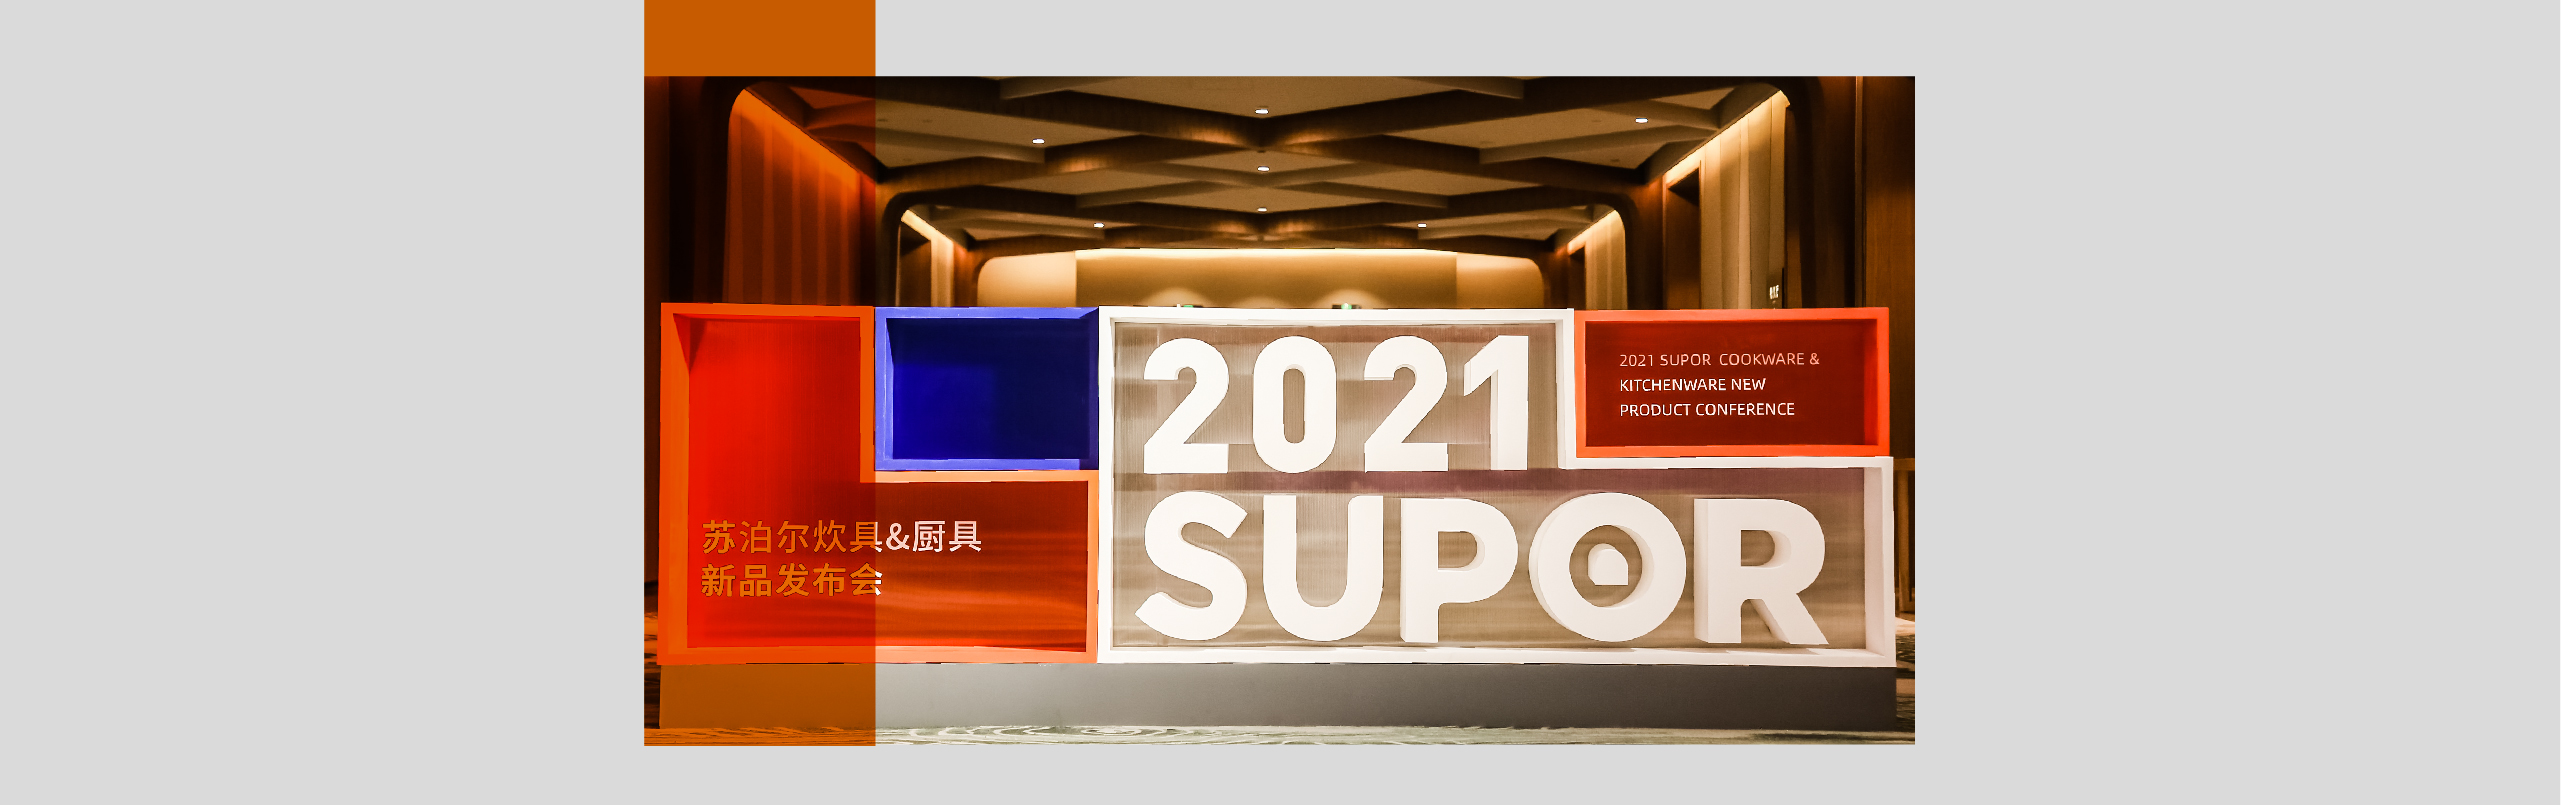 2021苏泊尔-02.jpg